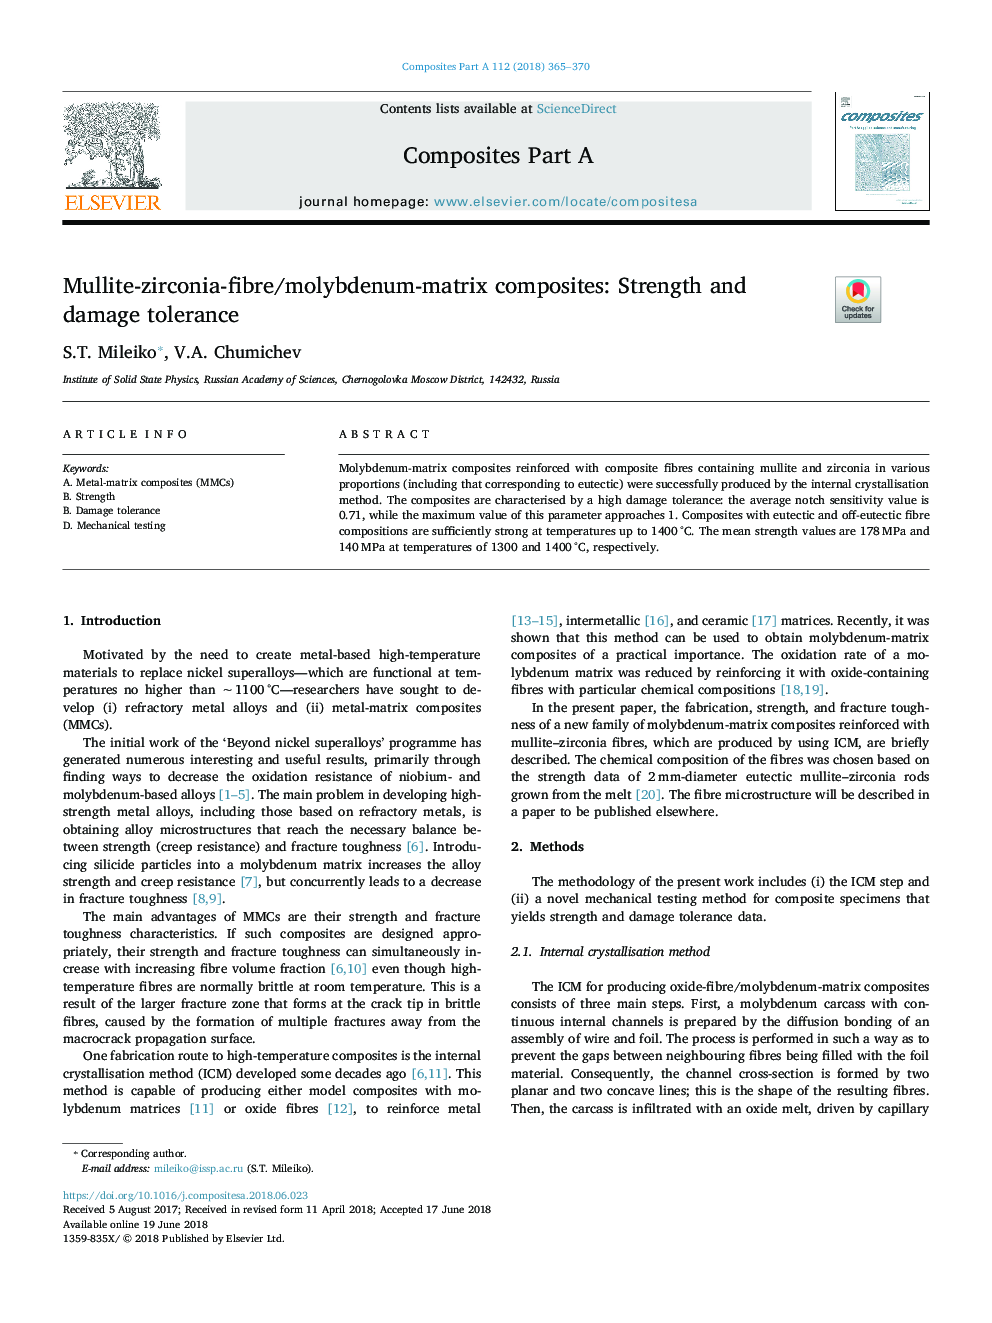 کامپوزیت مولتی و زیرکونیا-فیبر / مولیبدن-ماتریس: مقاومت و مقاومت به آسیب 